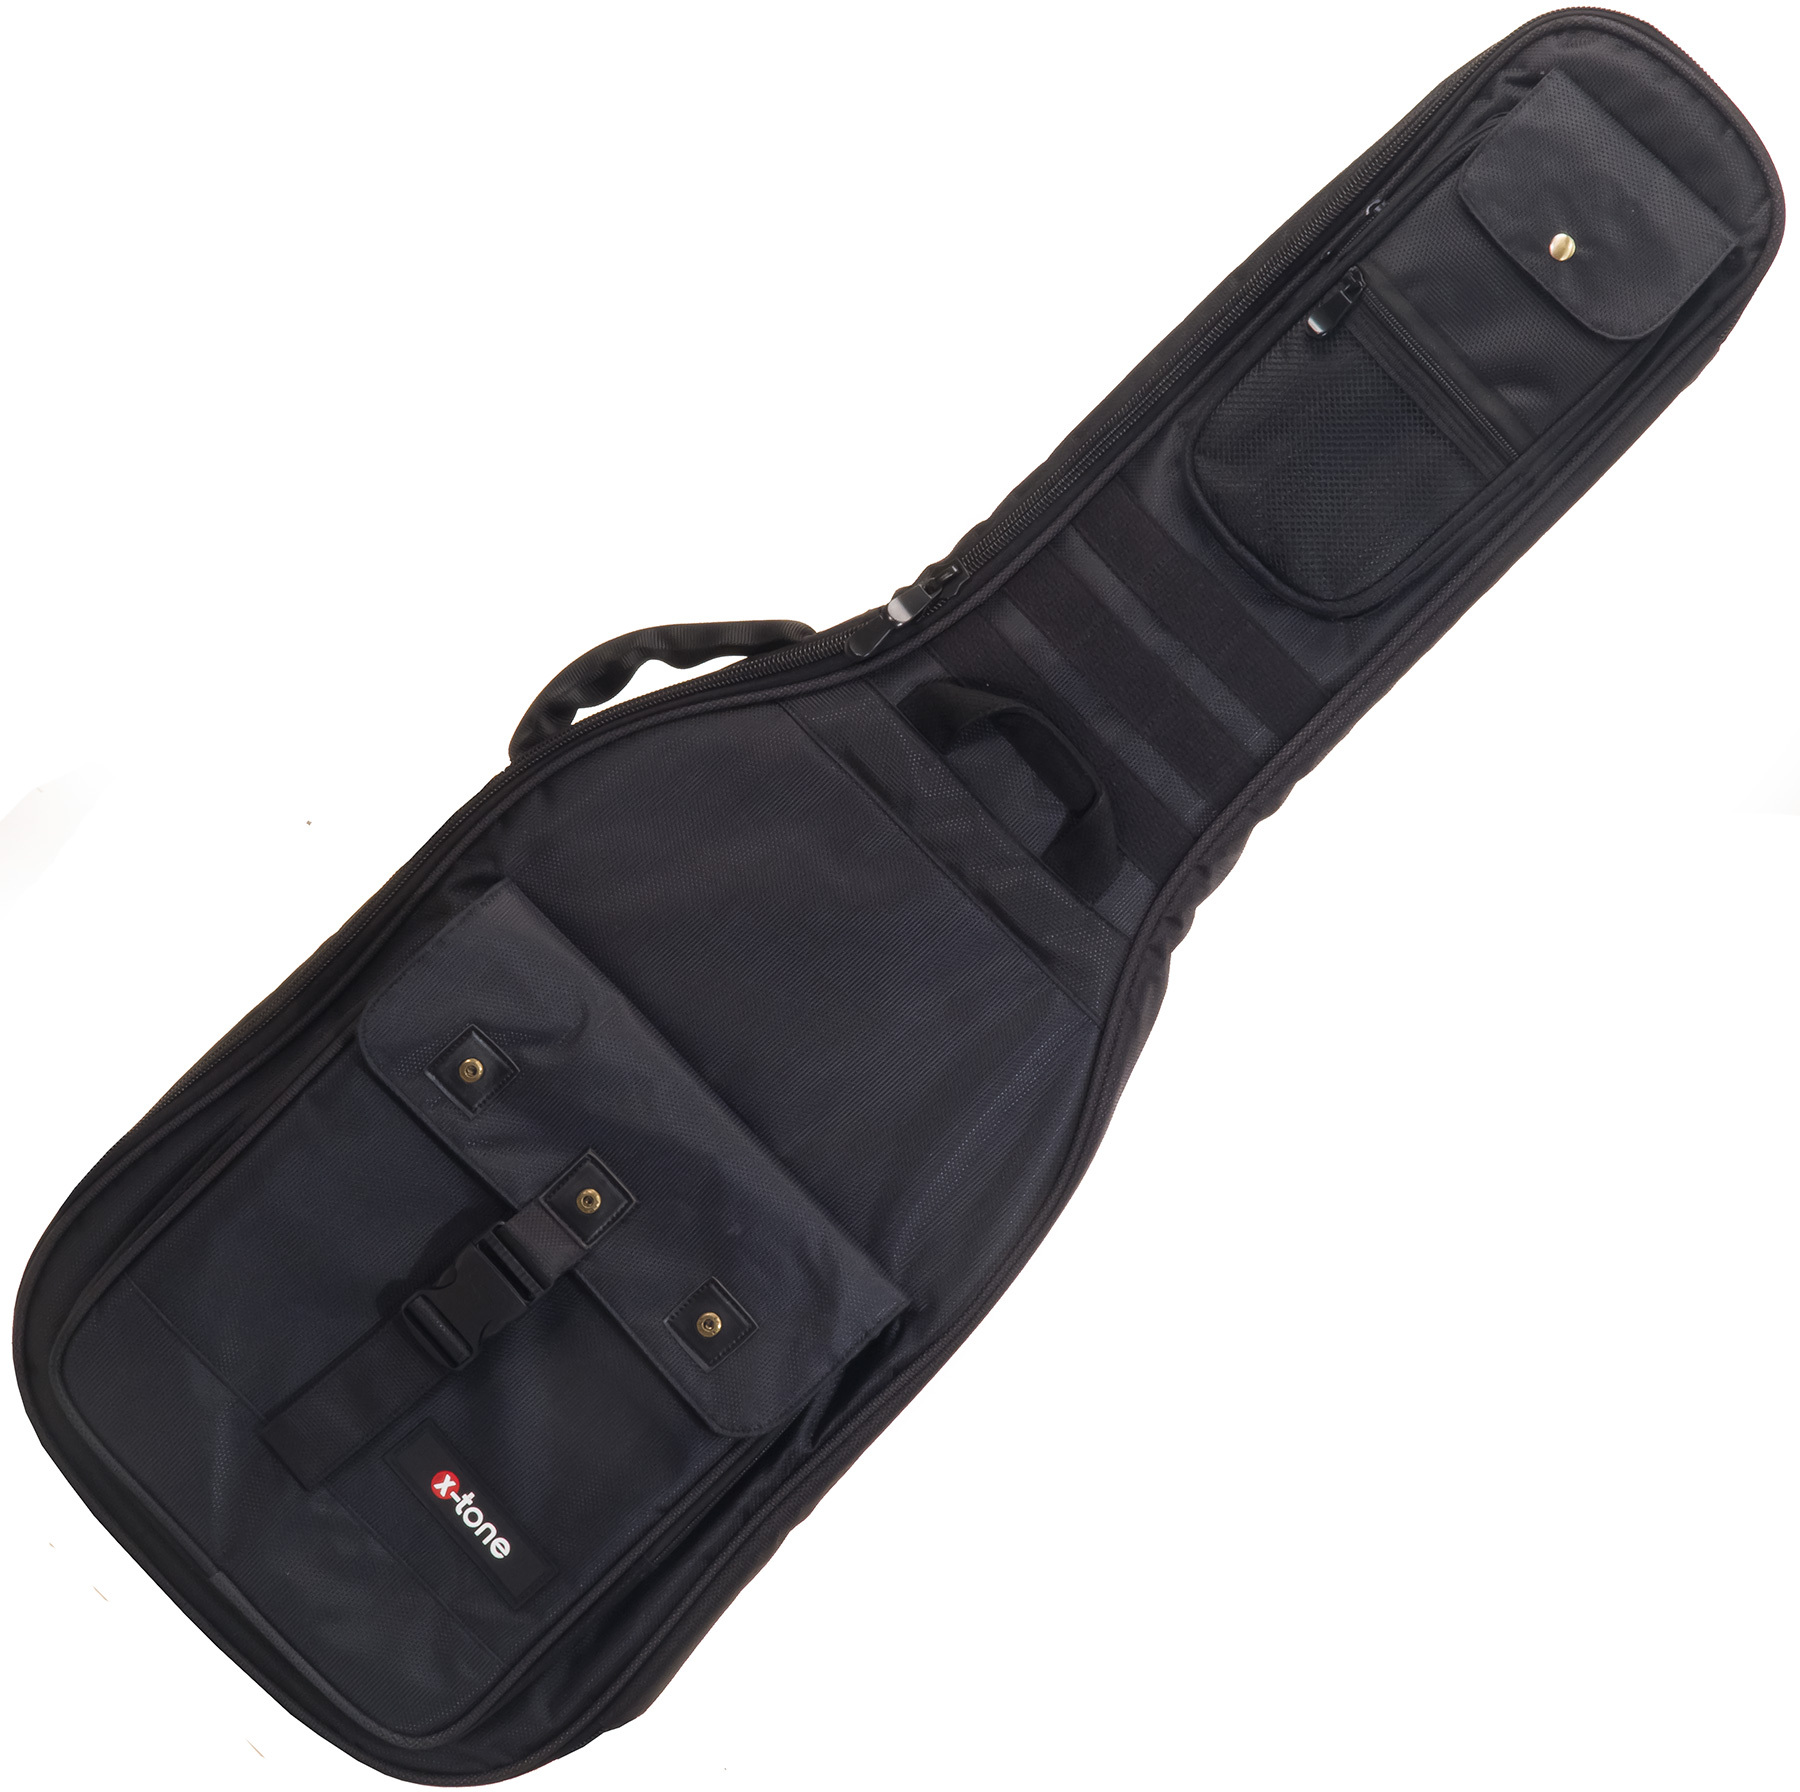 X-tone 2020 Ele-bk Light Deluxe Electric Guitar Bag Black (2083) - Tas voor Elektrische Gitaar - Main picture